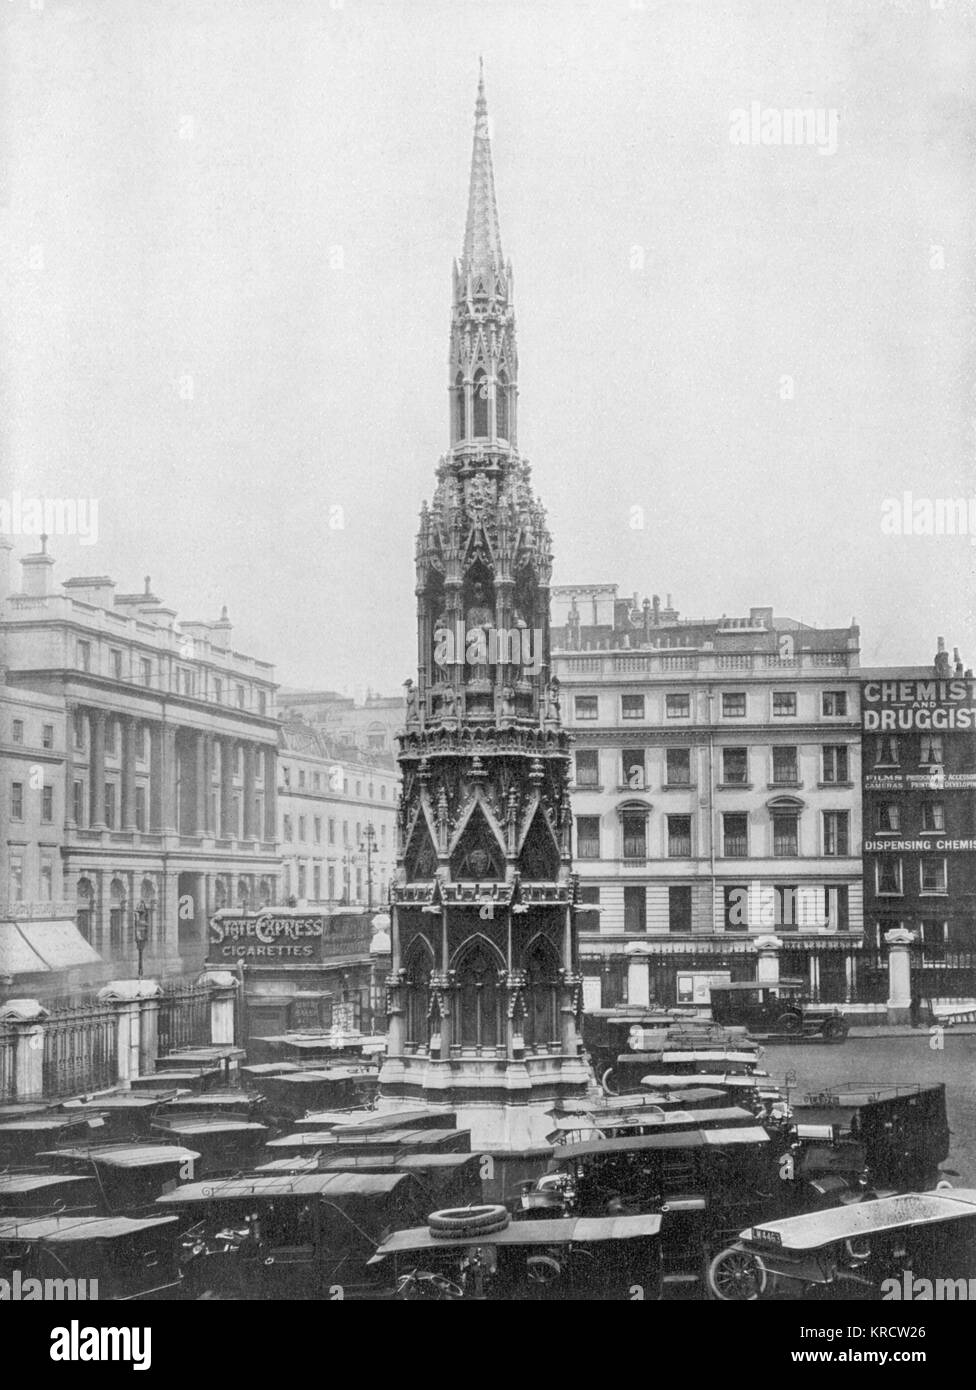 Charing Cross Station & obelisk Stock Photo